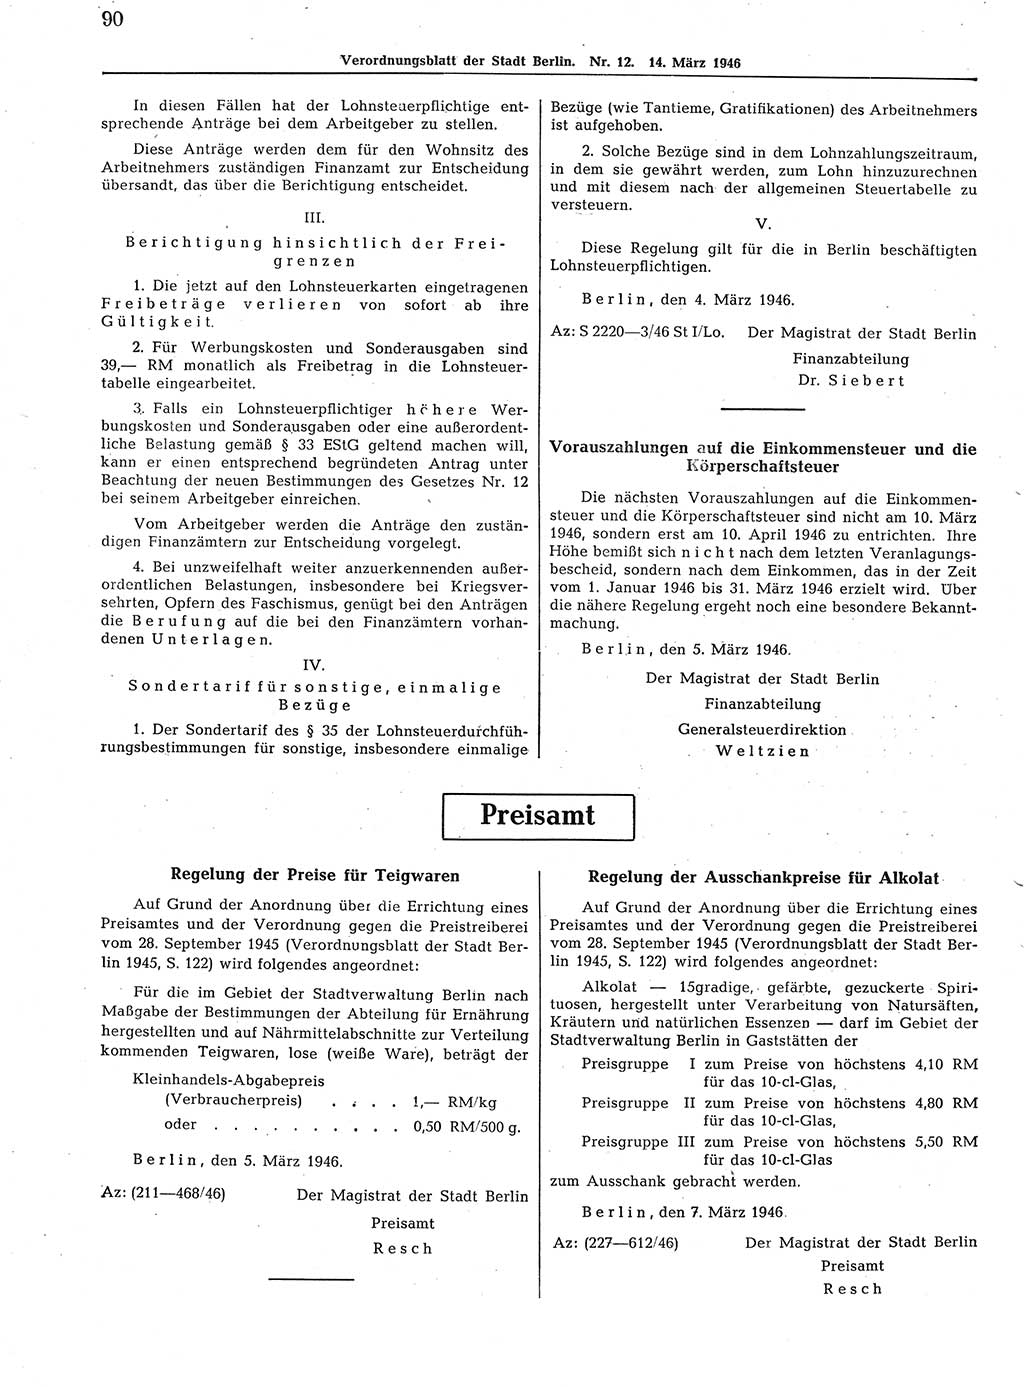 Verordnungsblatt (VOBl.) der Stadt Berlin, für Groß-Berlin 1946, Seite 90 (VOBl. Bln. 1946, S. 90)